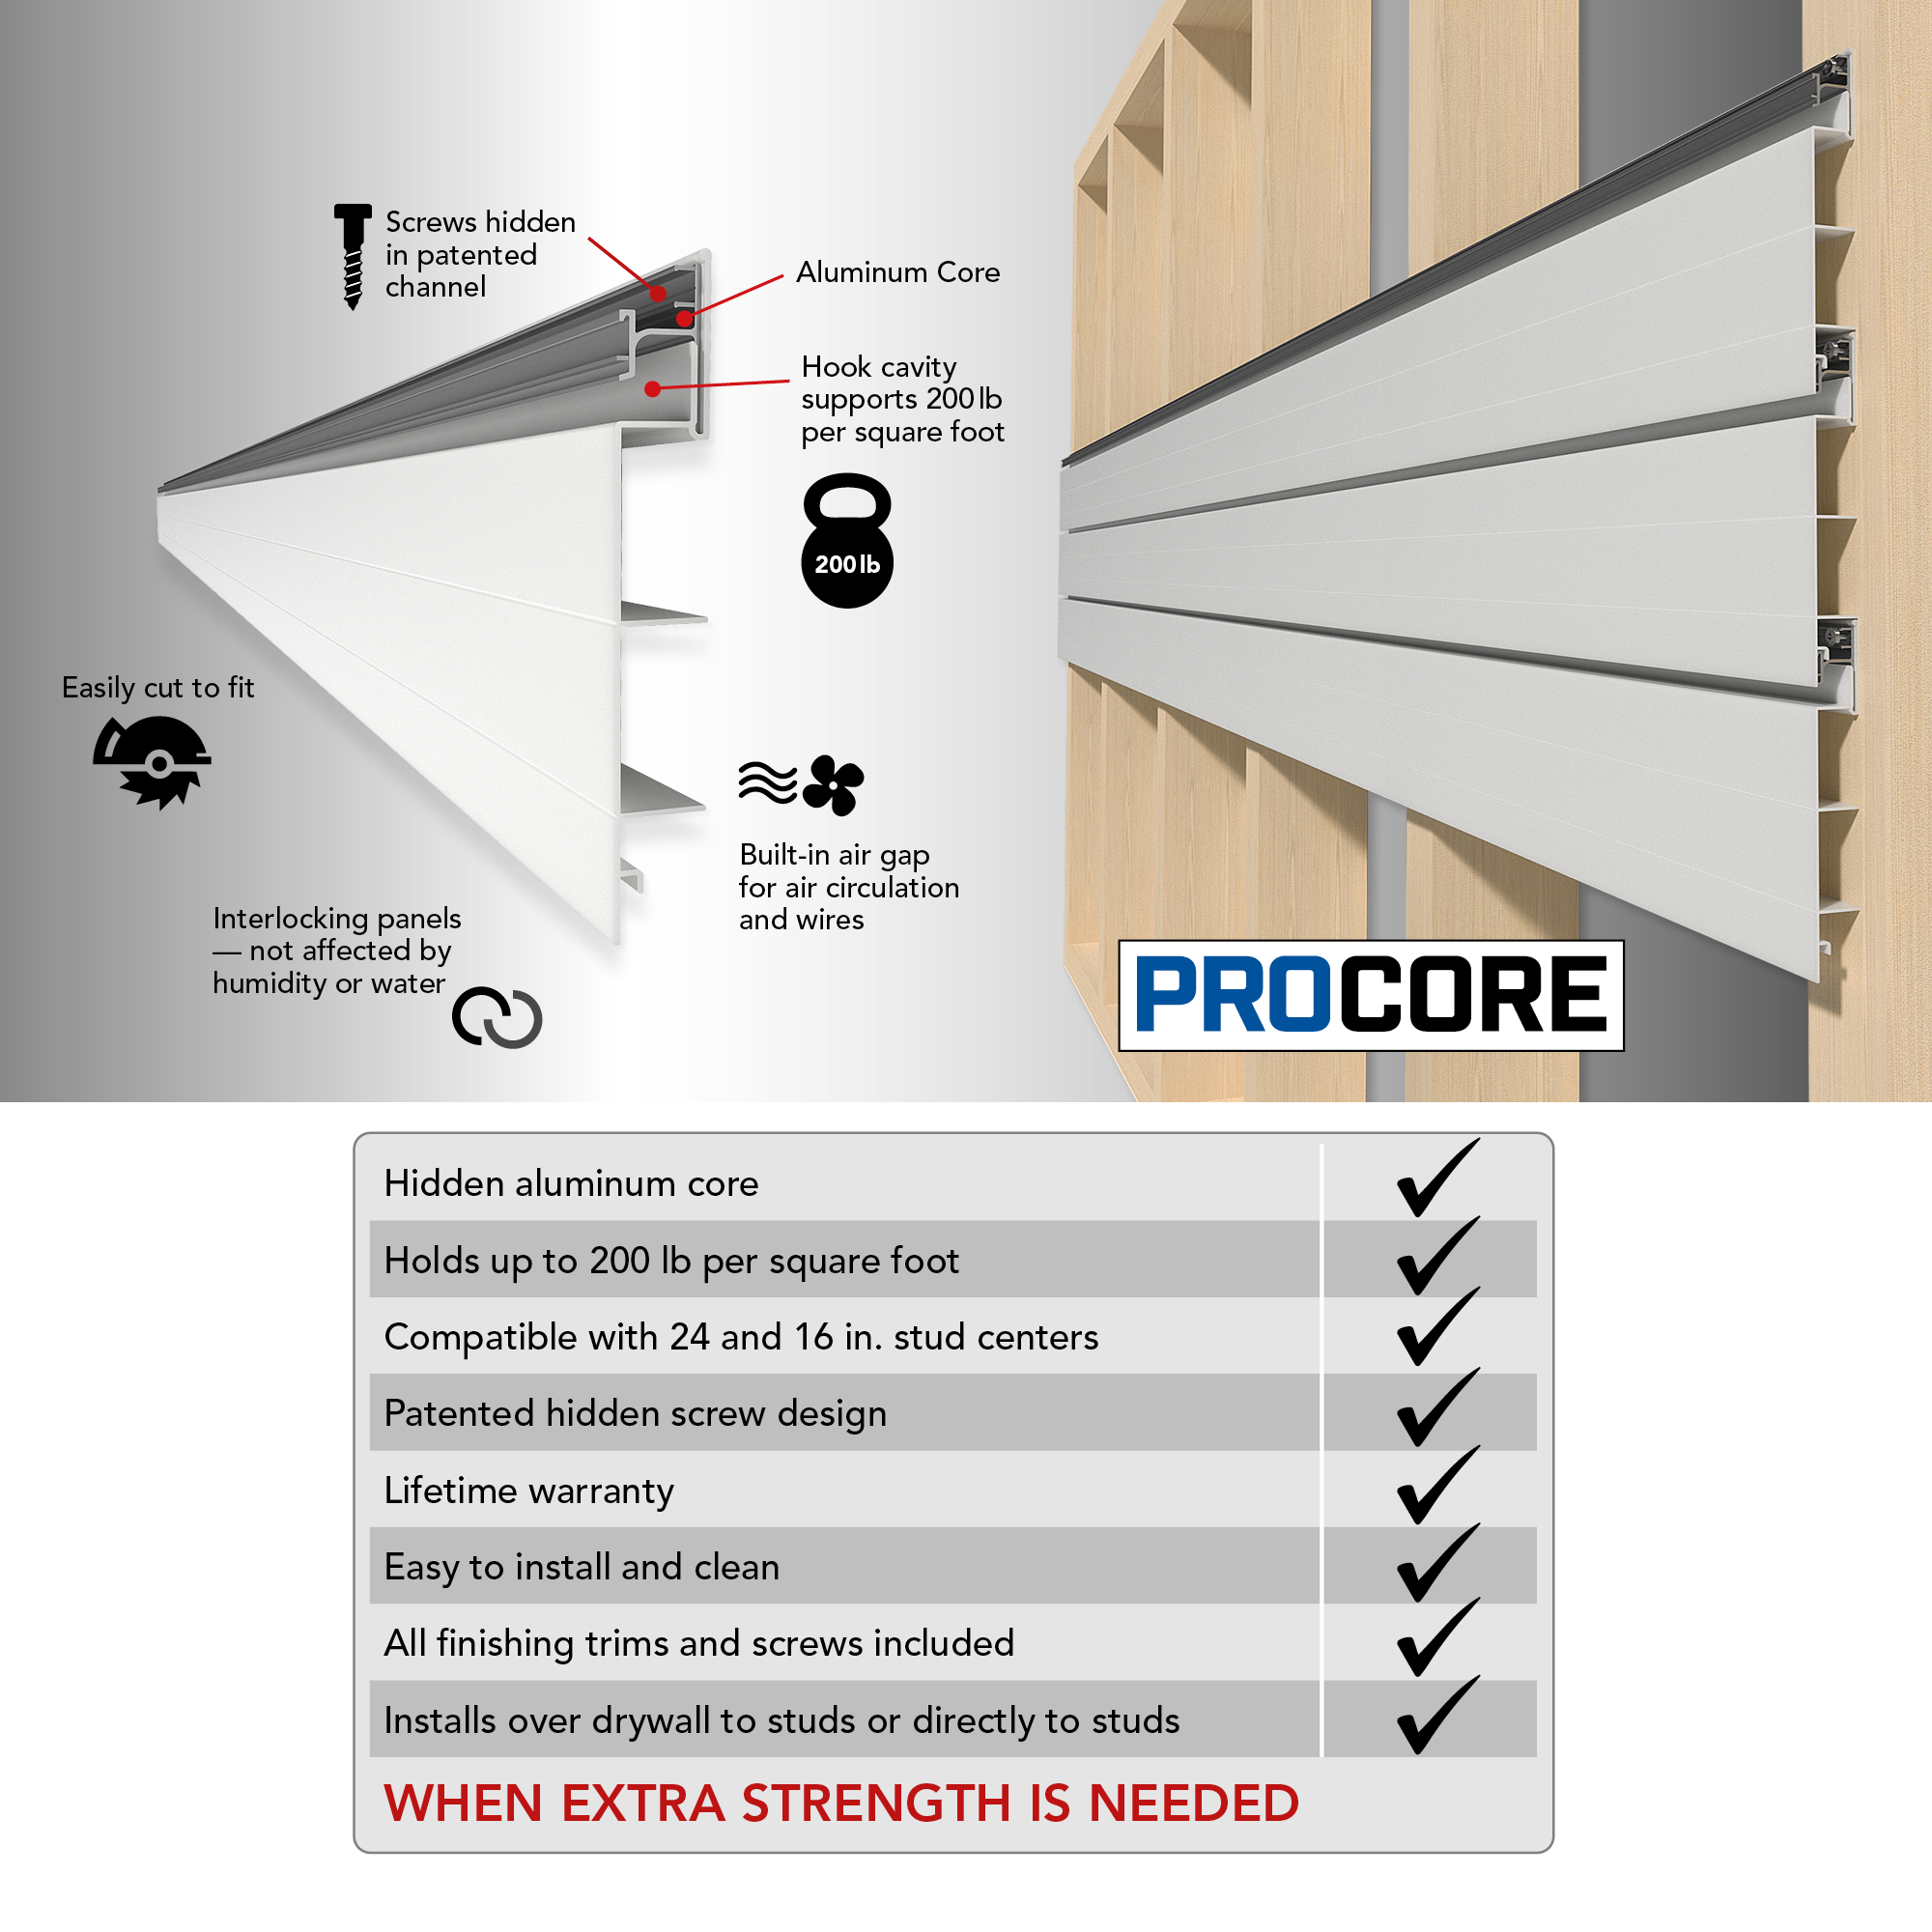 4 x 8 ft. PROCORE PVC Slatwall – 2 Pack 64 sq ft